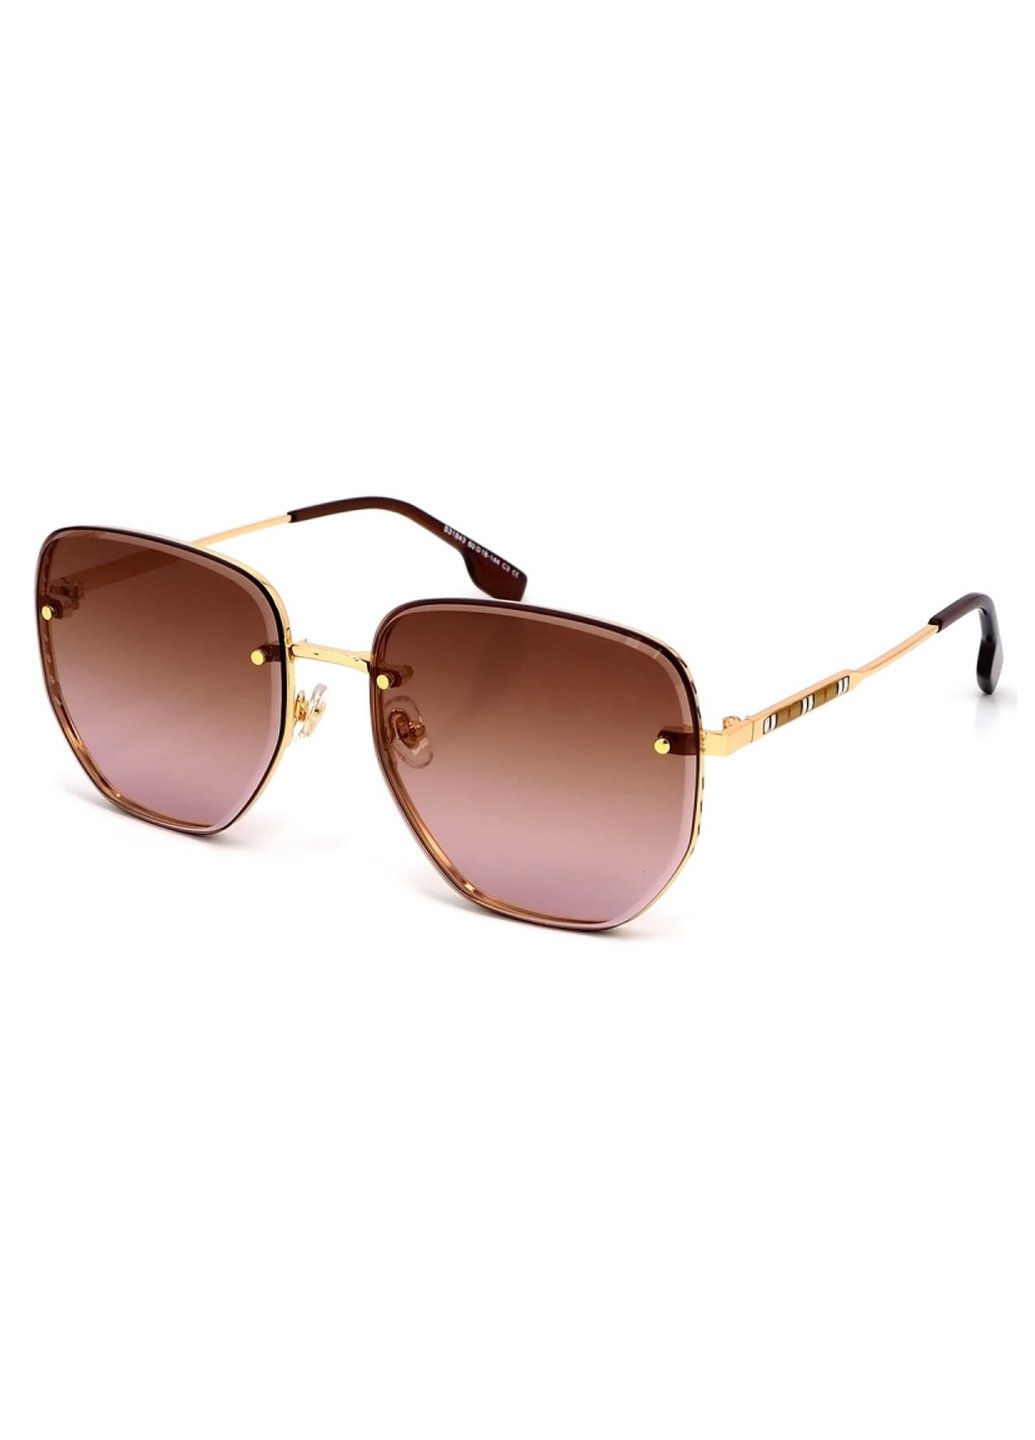 Купить Женские солнцезащитные очки Merlini с поляризацией S31843 117128 - Золотистый в интернет-магазине